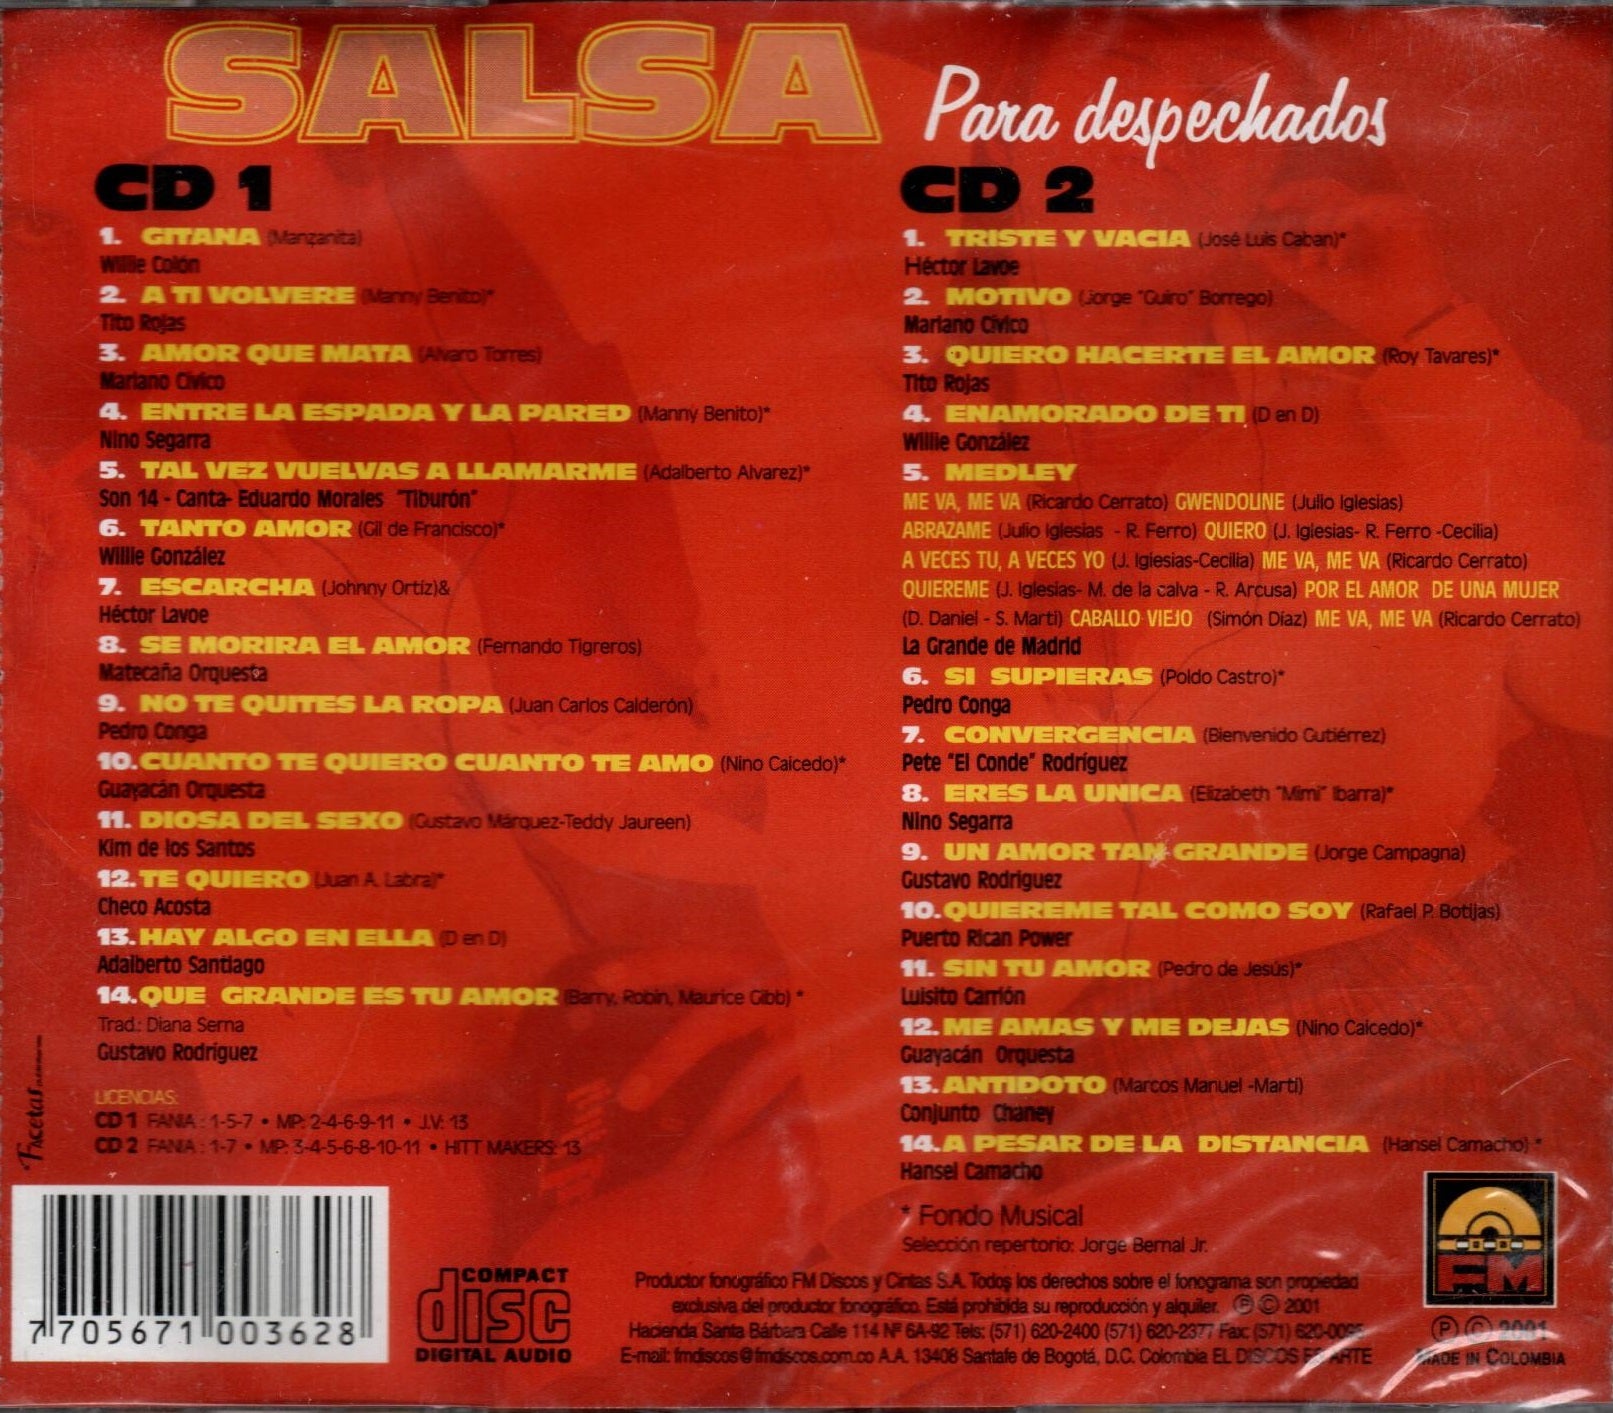 CD x 2 Salsa para despechados